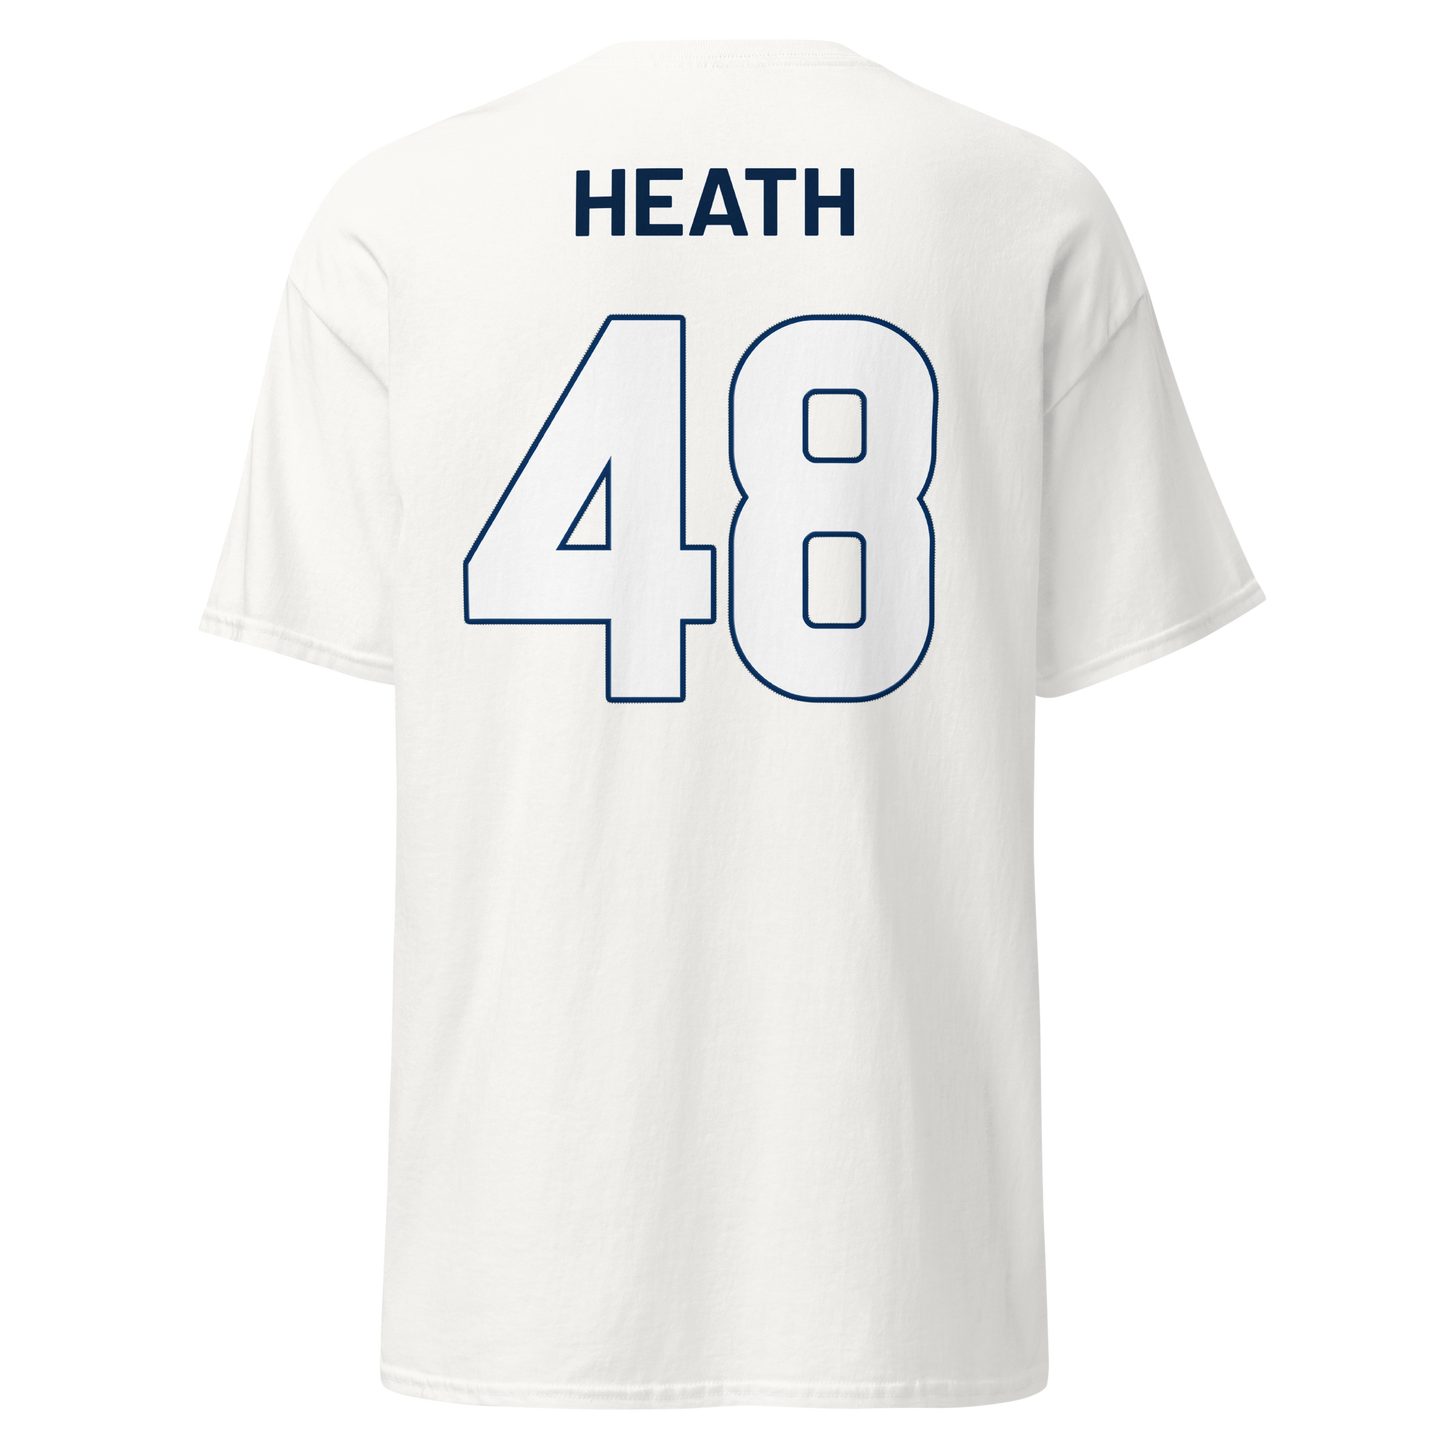 Aubrey Heath | Jersey-Style Shirt